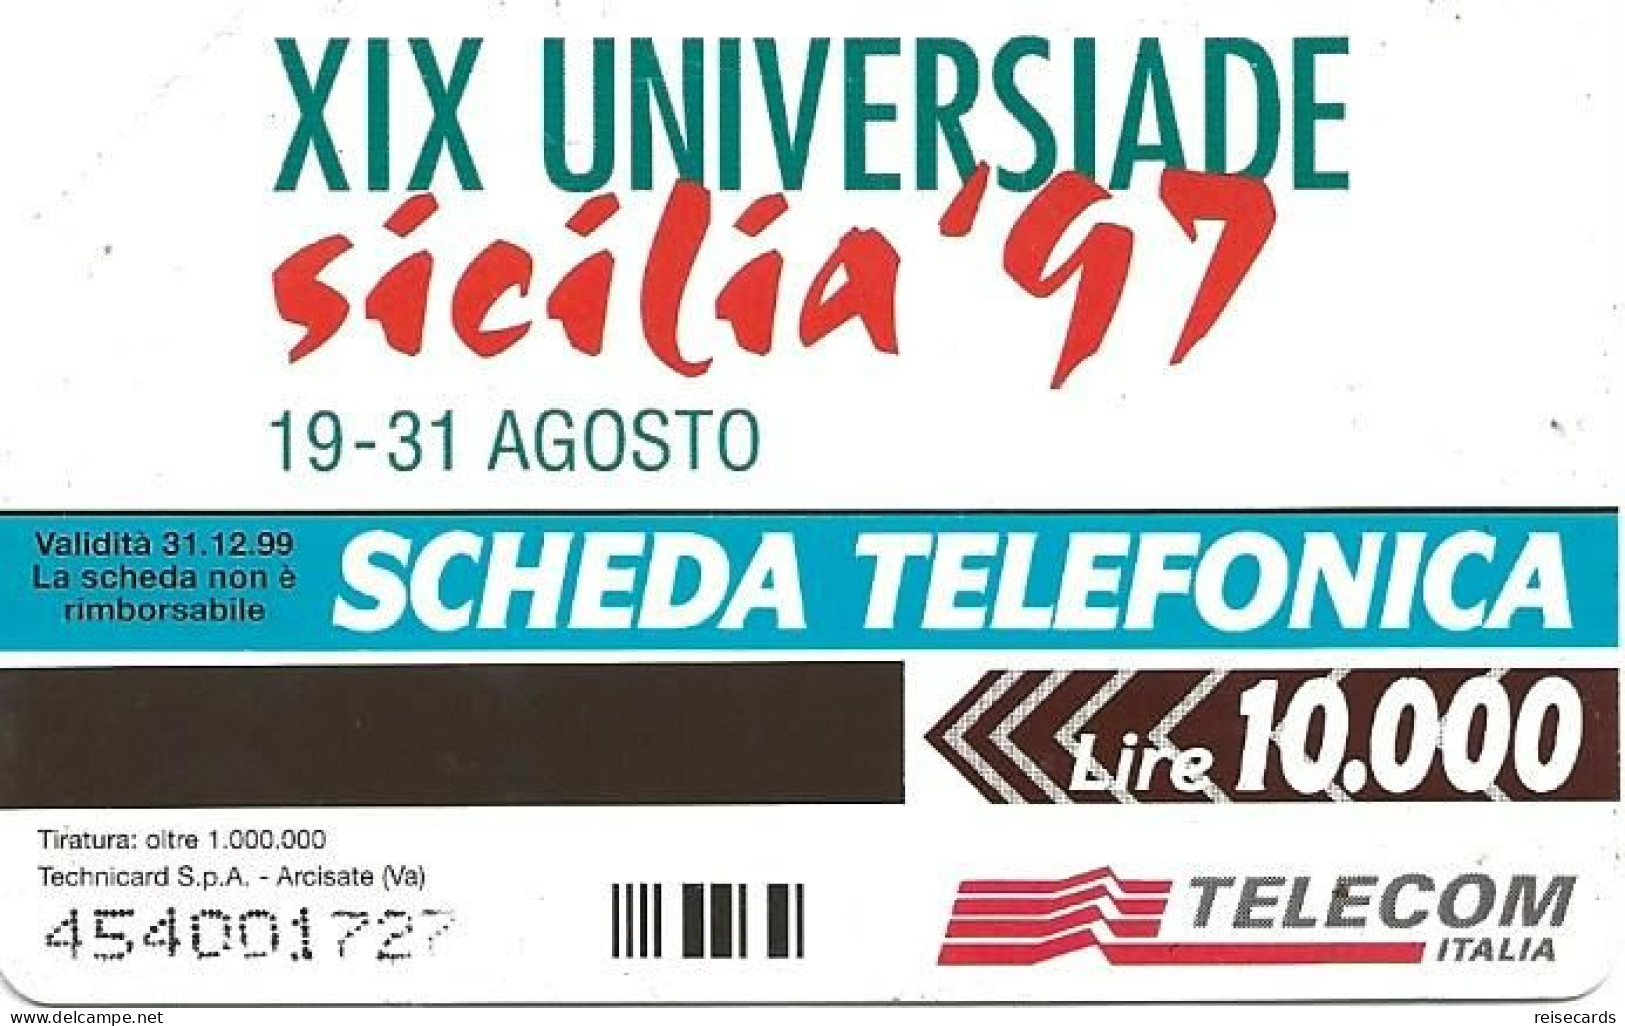 Italy: Telecom Italia - XIX Universiade Sicilia '97, Archimede - Públicas  Publicitarias